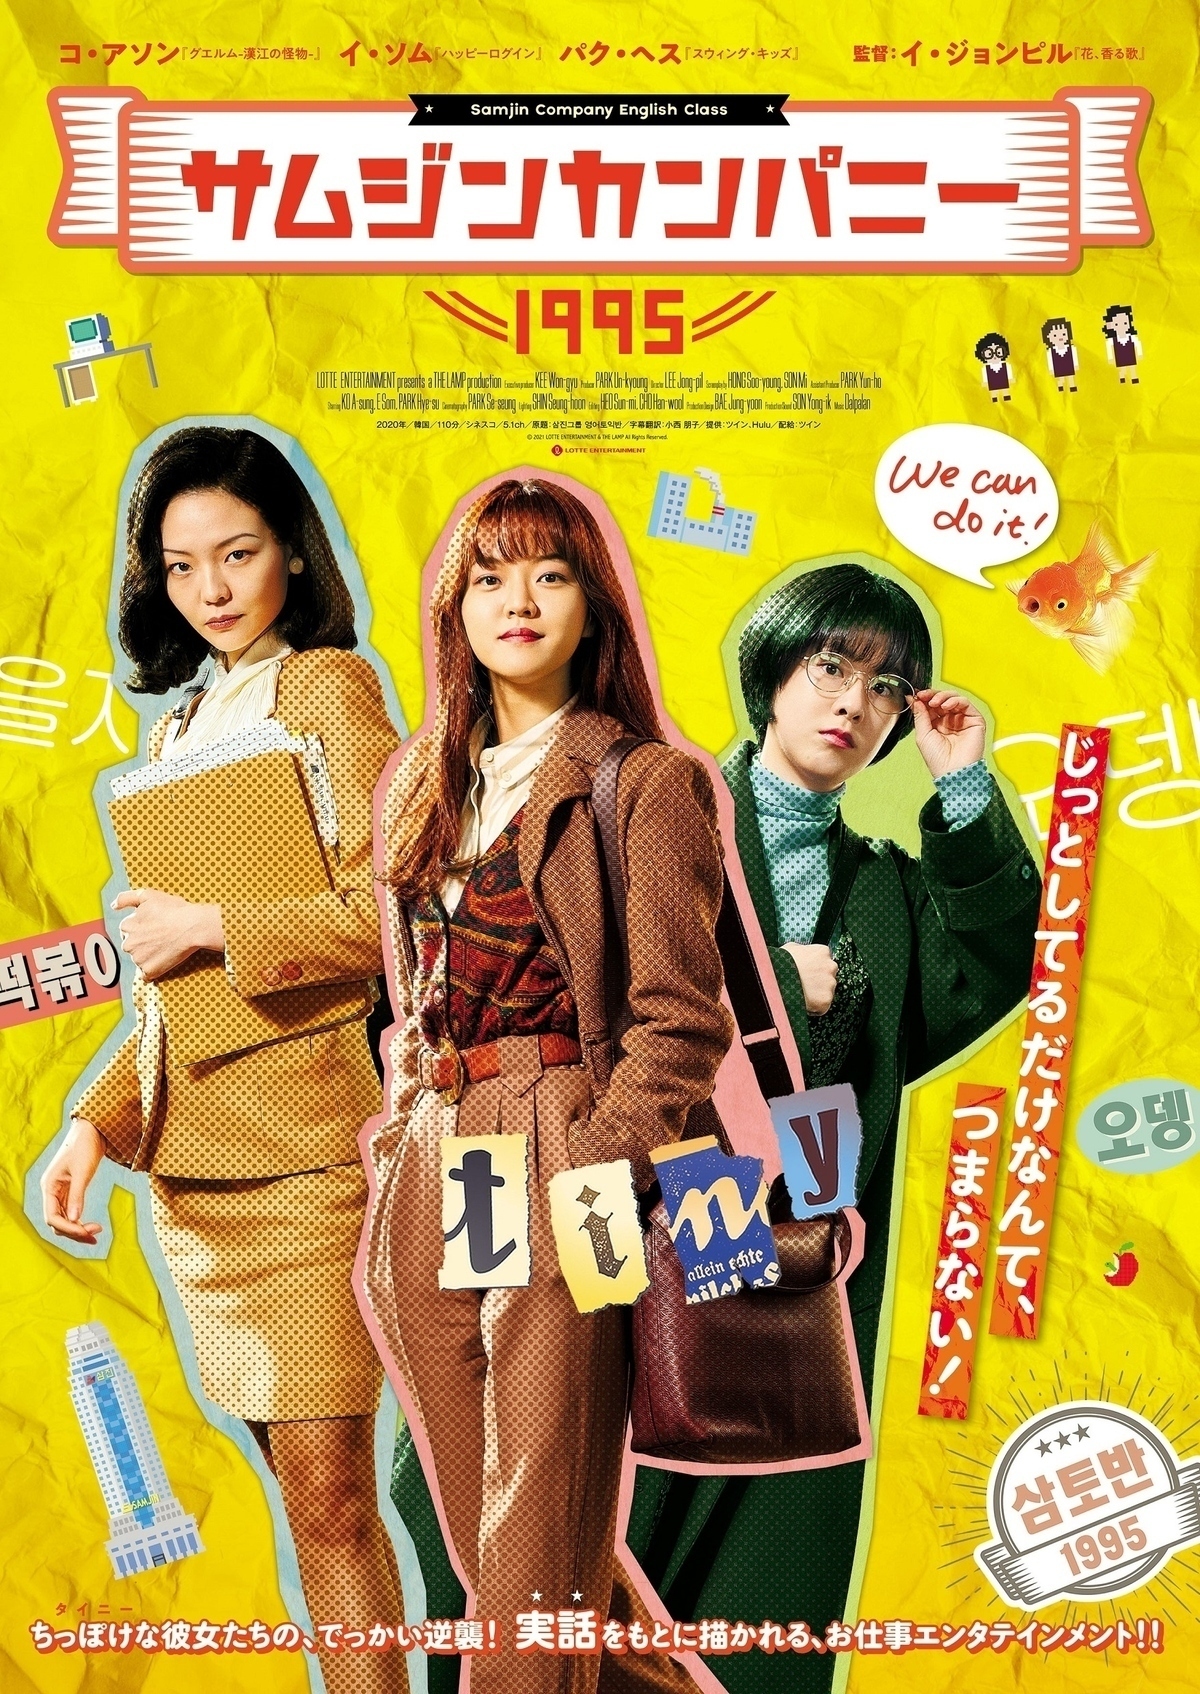 実力派女優コ アソン主演 映画 サムジンカンパニー1995 日本で7月9日より公開決定 Kstyle